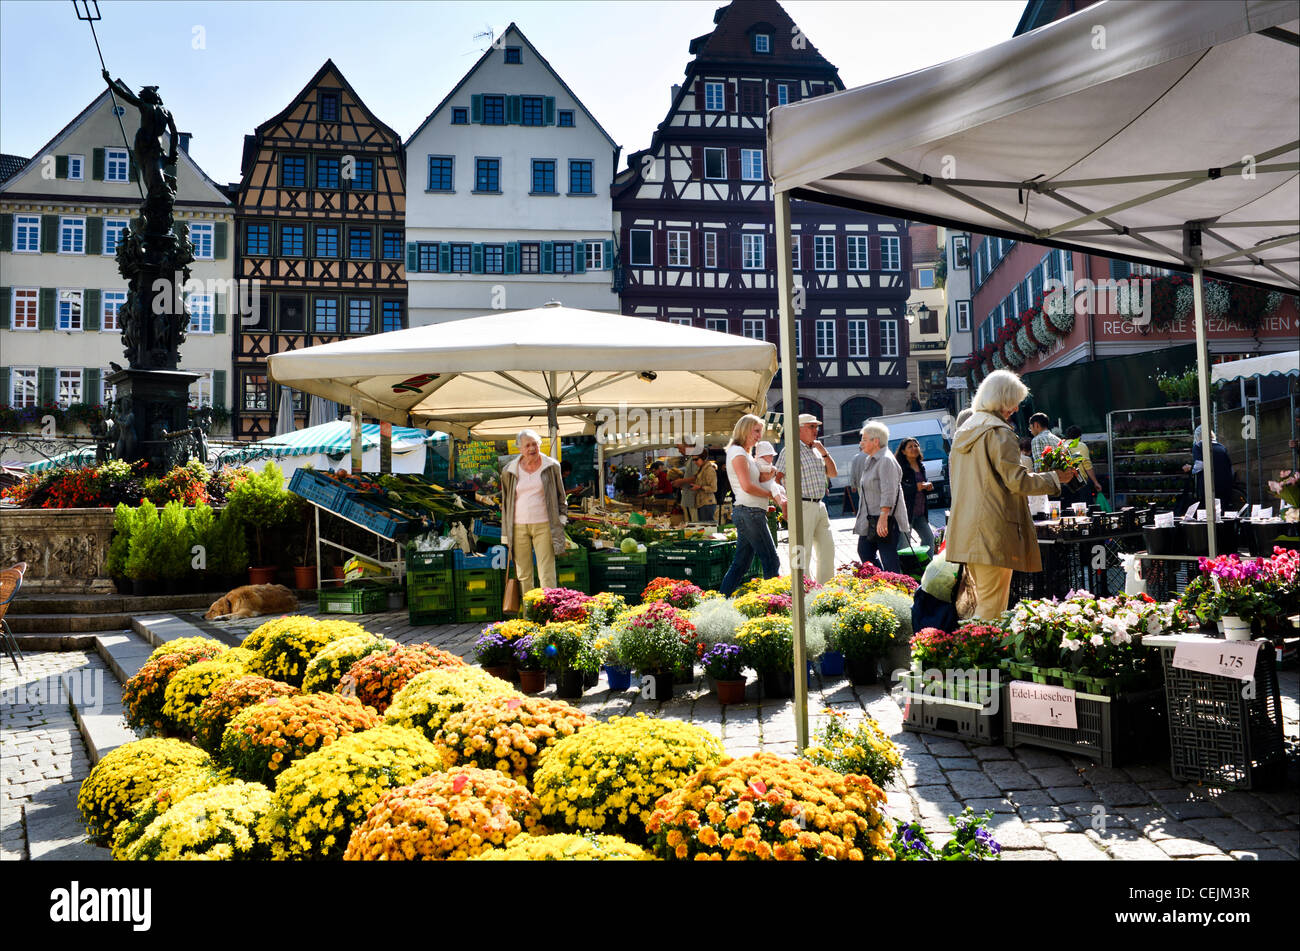 Blumen und Gemüse Stände auf dem Wochenmarkt auf dem Marktplatz in Tübingen, Wochenmarkt Rathausplatz Tübingen, Stockfoto